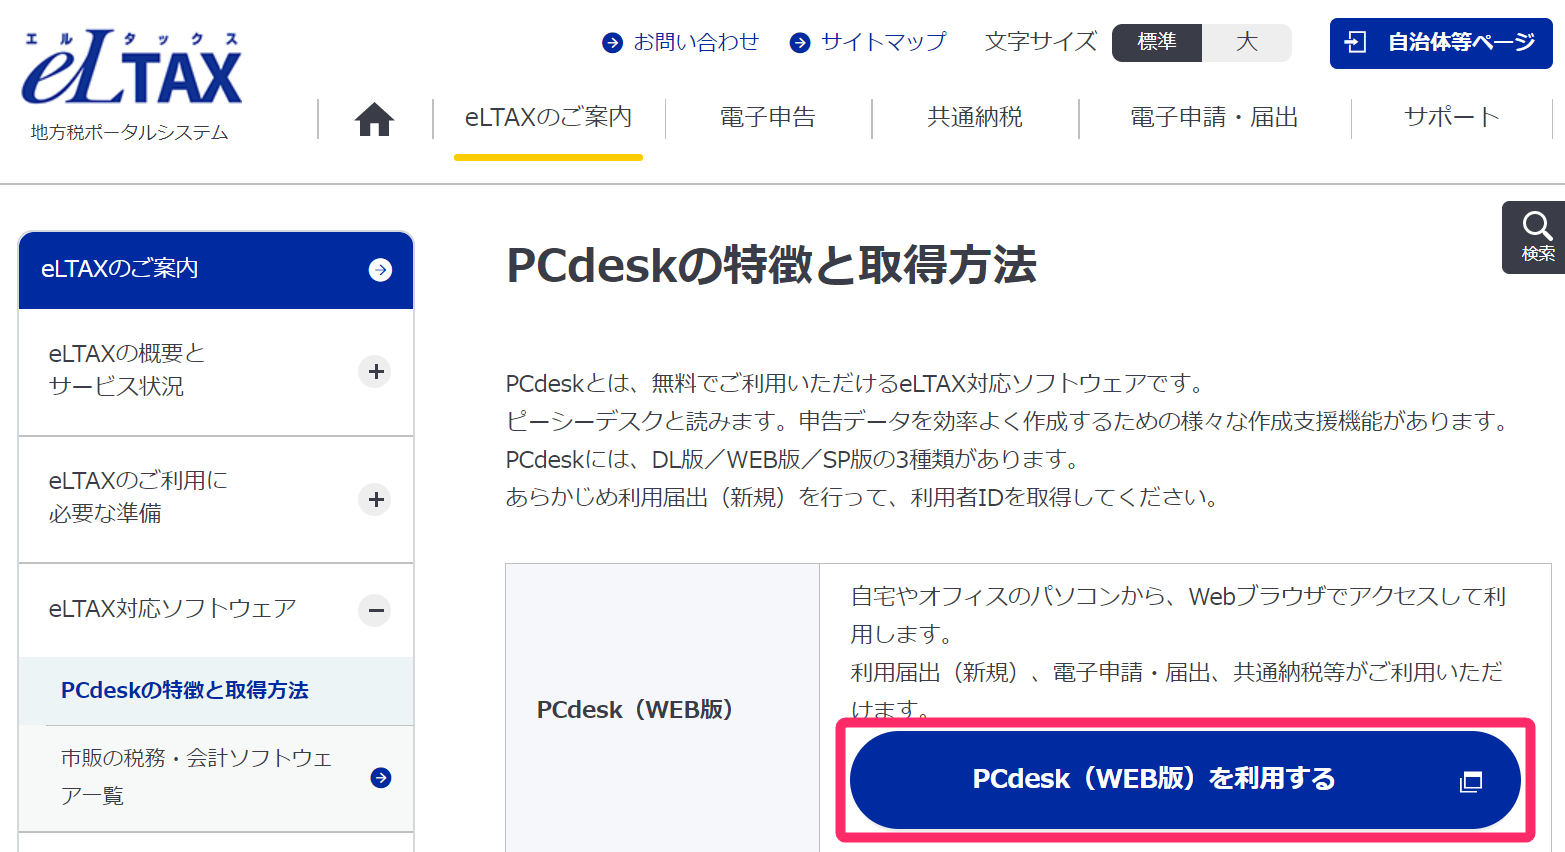 「PCdeskの特徴と取得方法」画面の［PCdesk（WEB版）を利用する］ボタンを指し示しているスクリーンショット